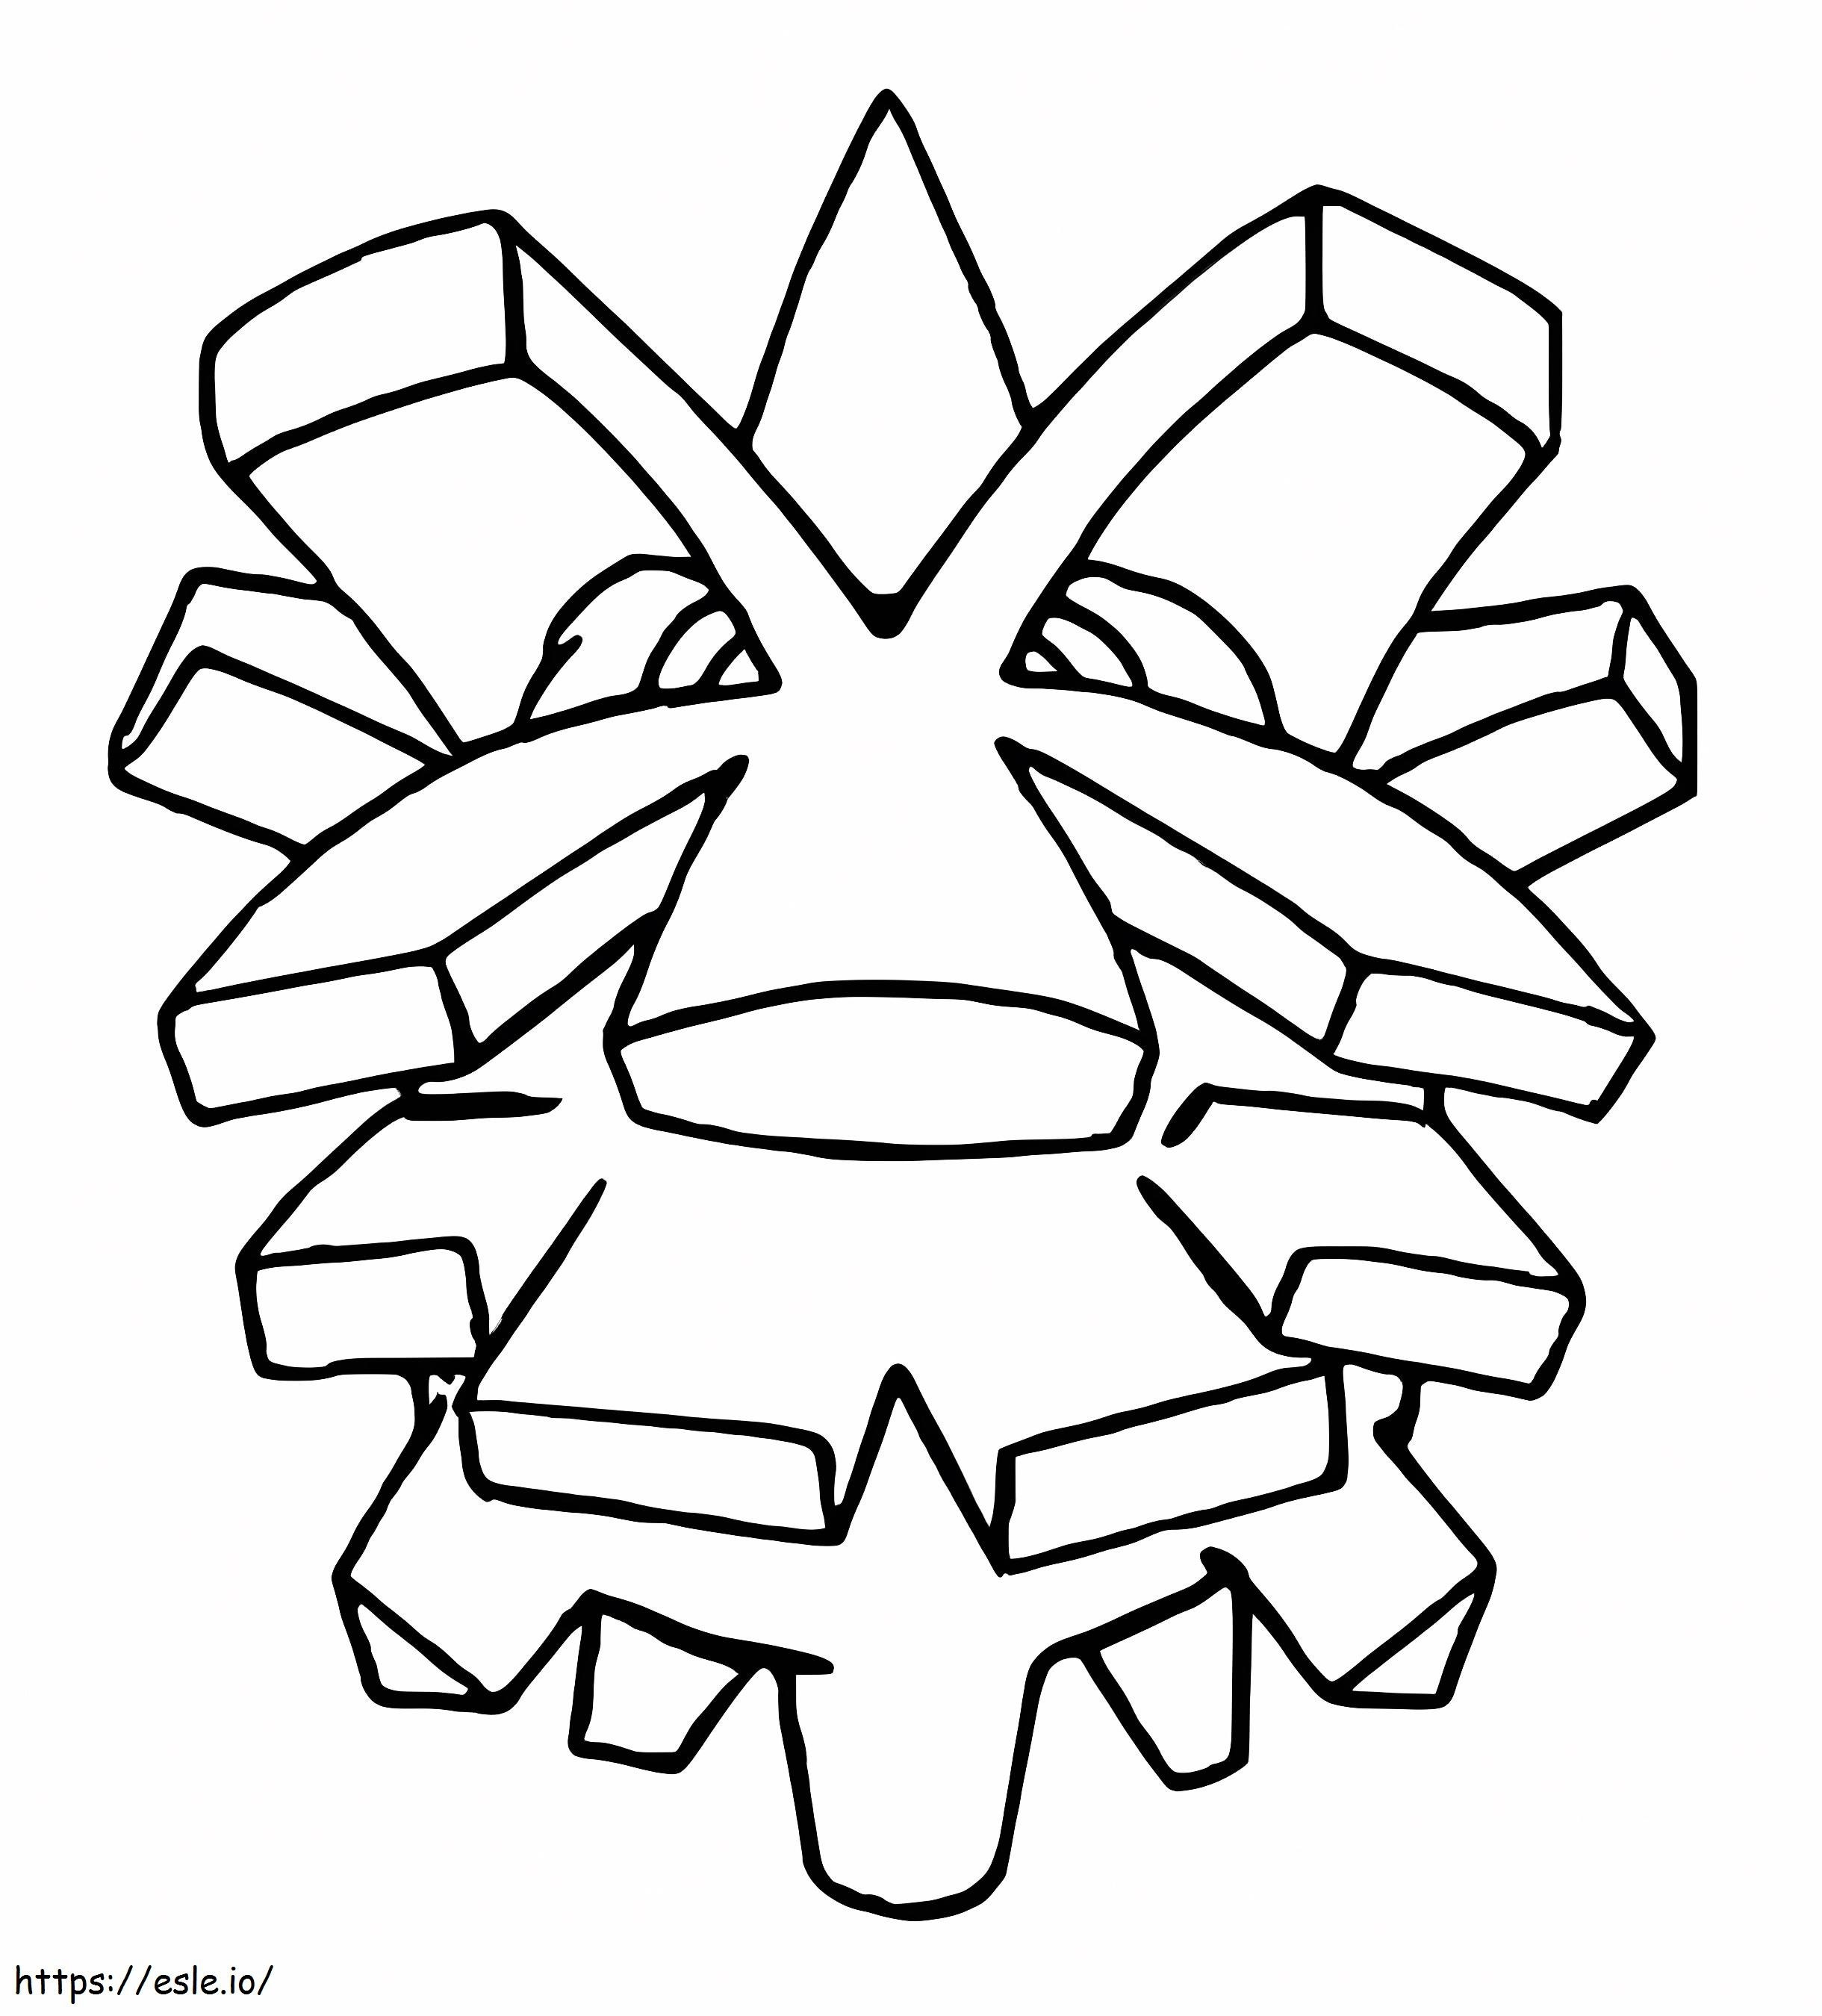 Pokémon Pineco geração 2 para colorir